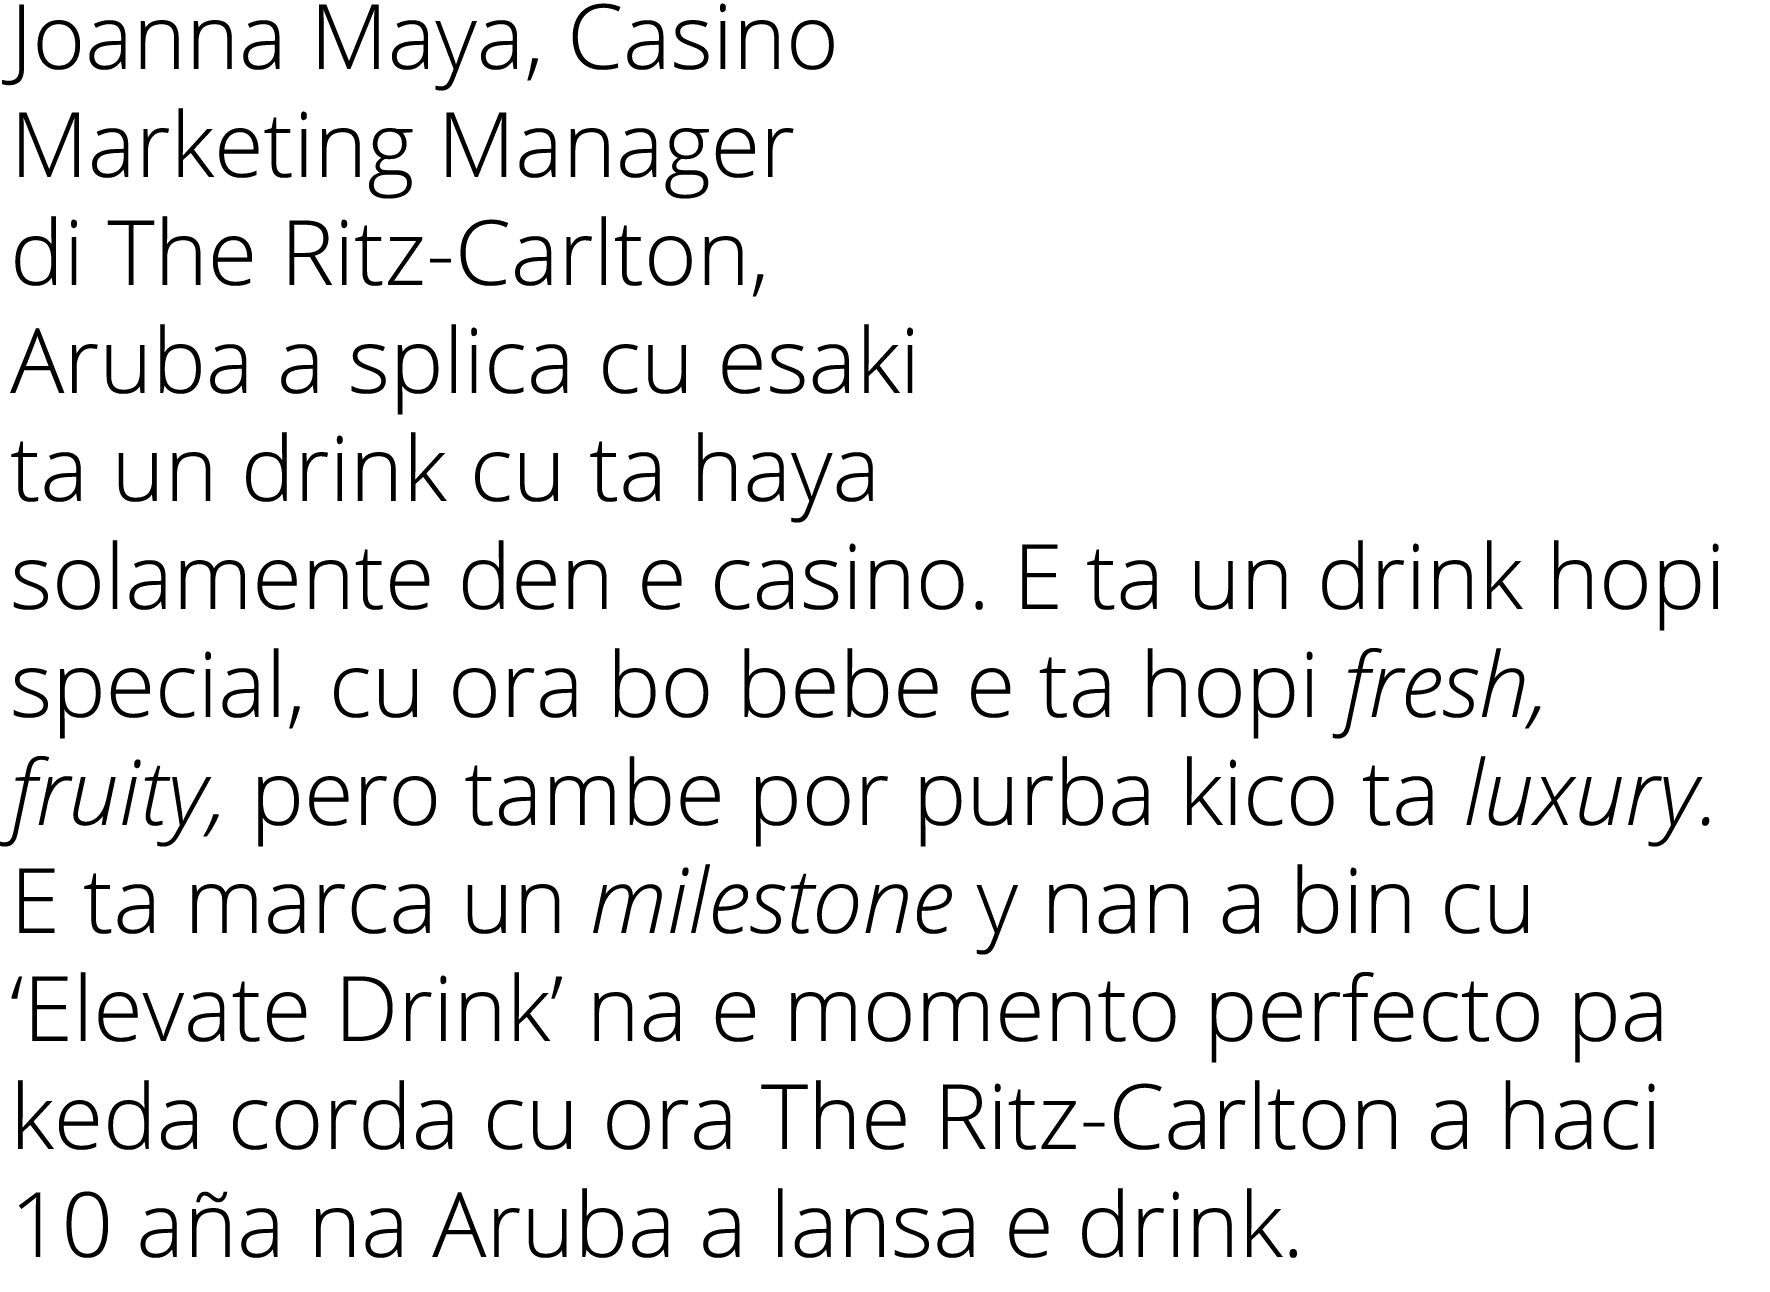 Joanna Maya, Casino Marketing Manager di The Ritz Carlton, Aruba a splica cu esaki ta un drink cu ta haya solamente d...